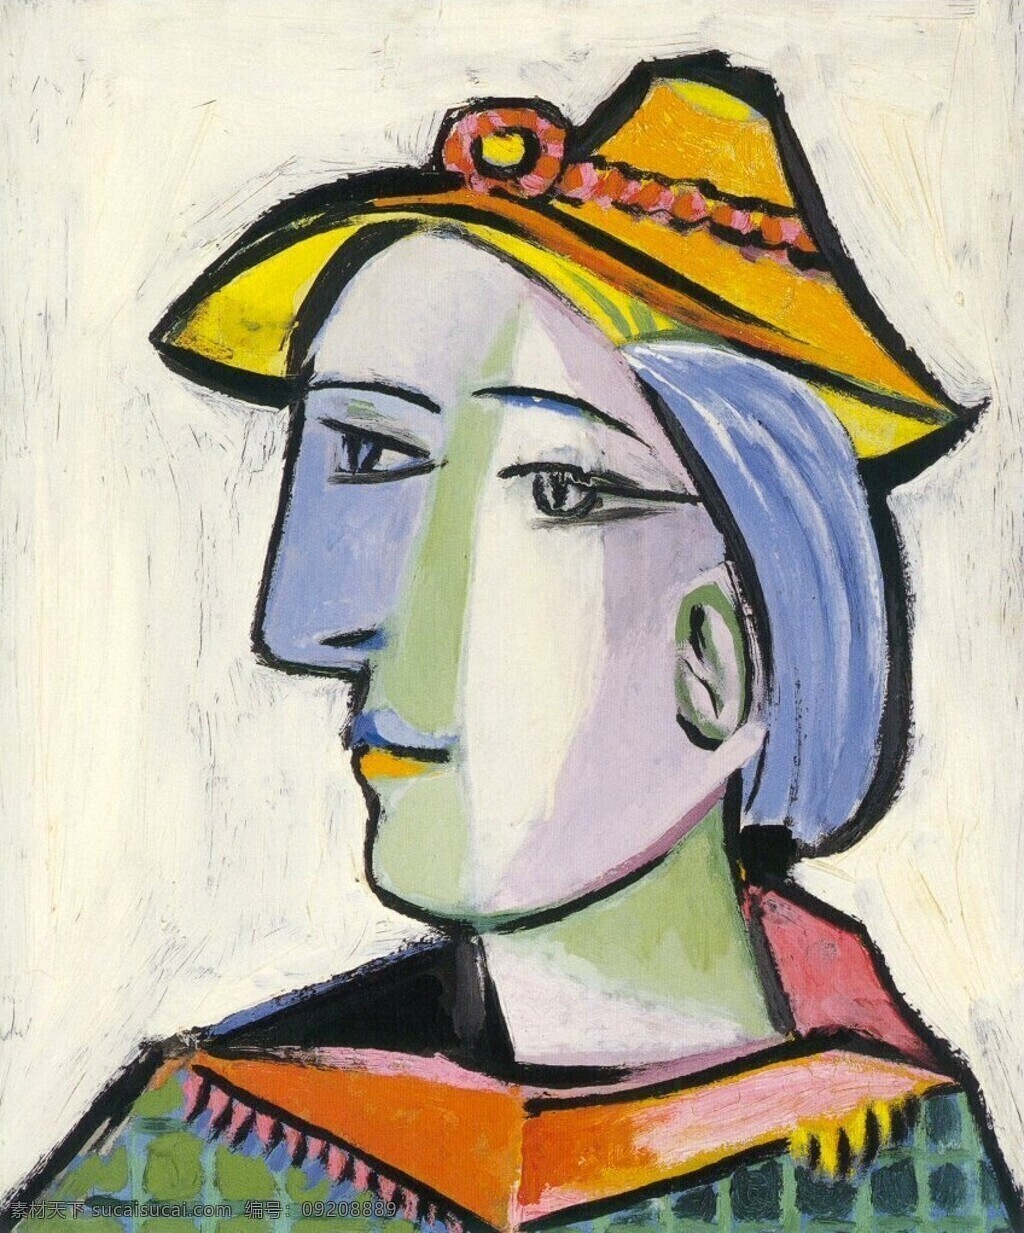 chapeau 西班牙 画家 巴勃罗 毕加索 抽象 油画 人物 人体 装饰画 au walter marieth 淇 藉 e 1936 装饰素材